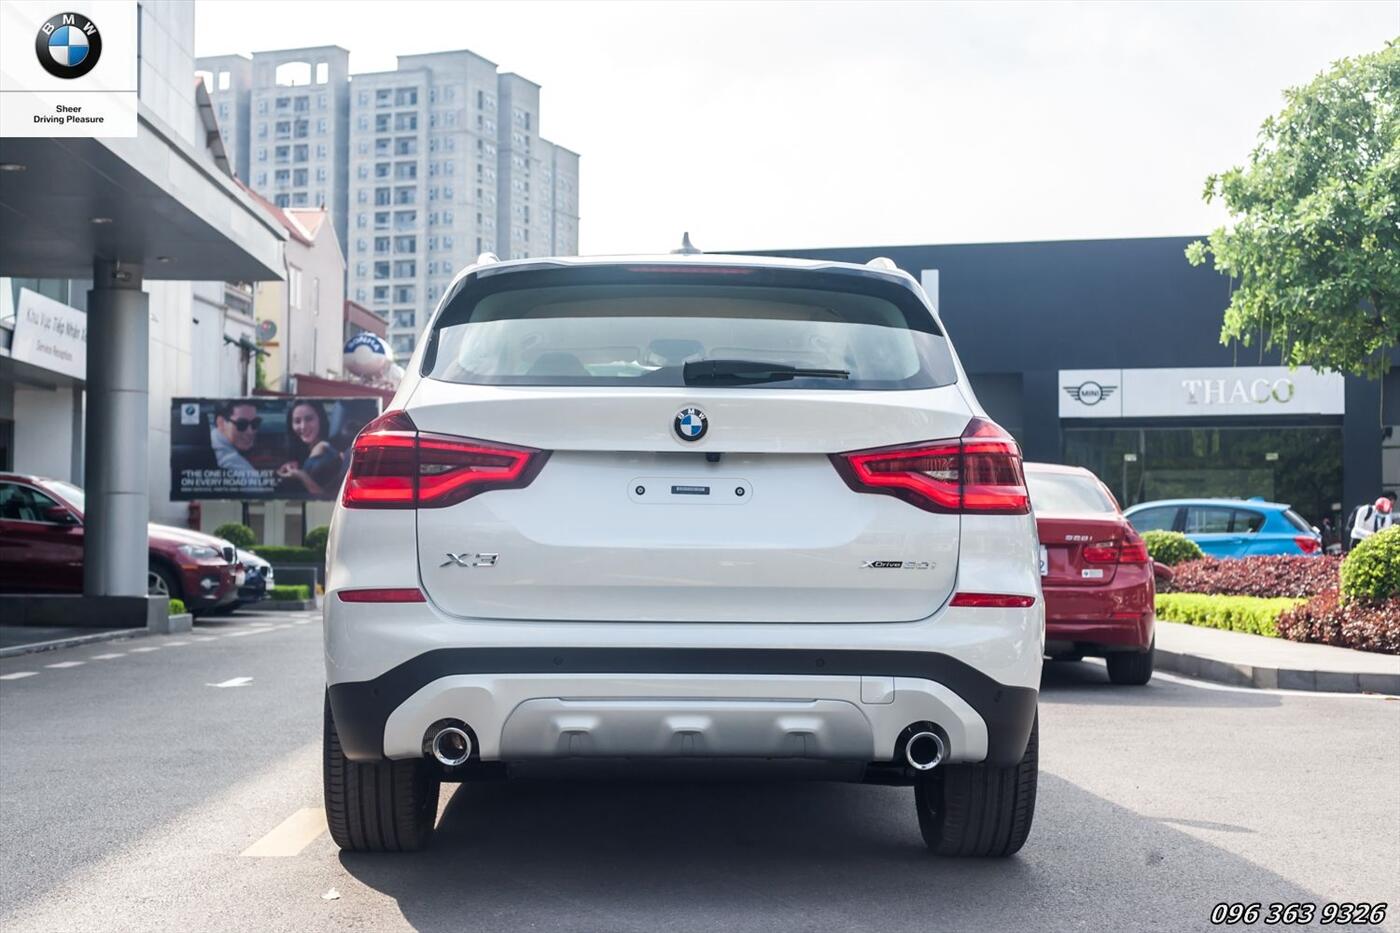 Đánh giá xe BMW X3 2018 hoàn toàn mới - Ảnh 6